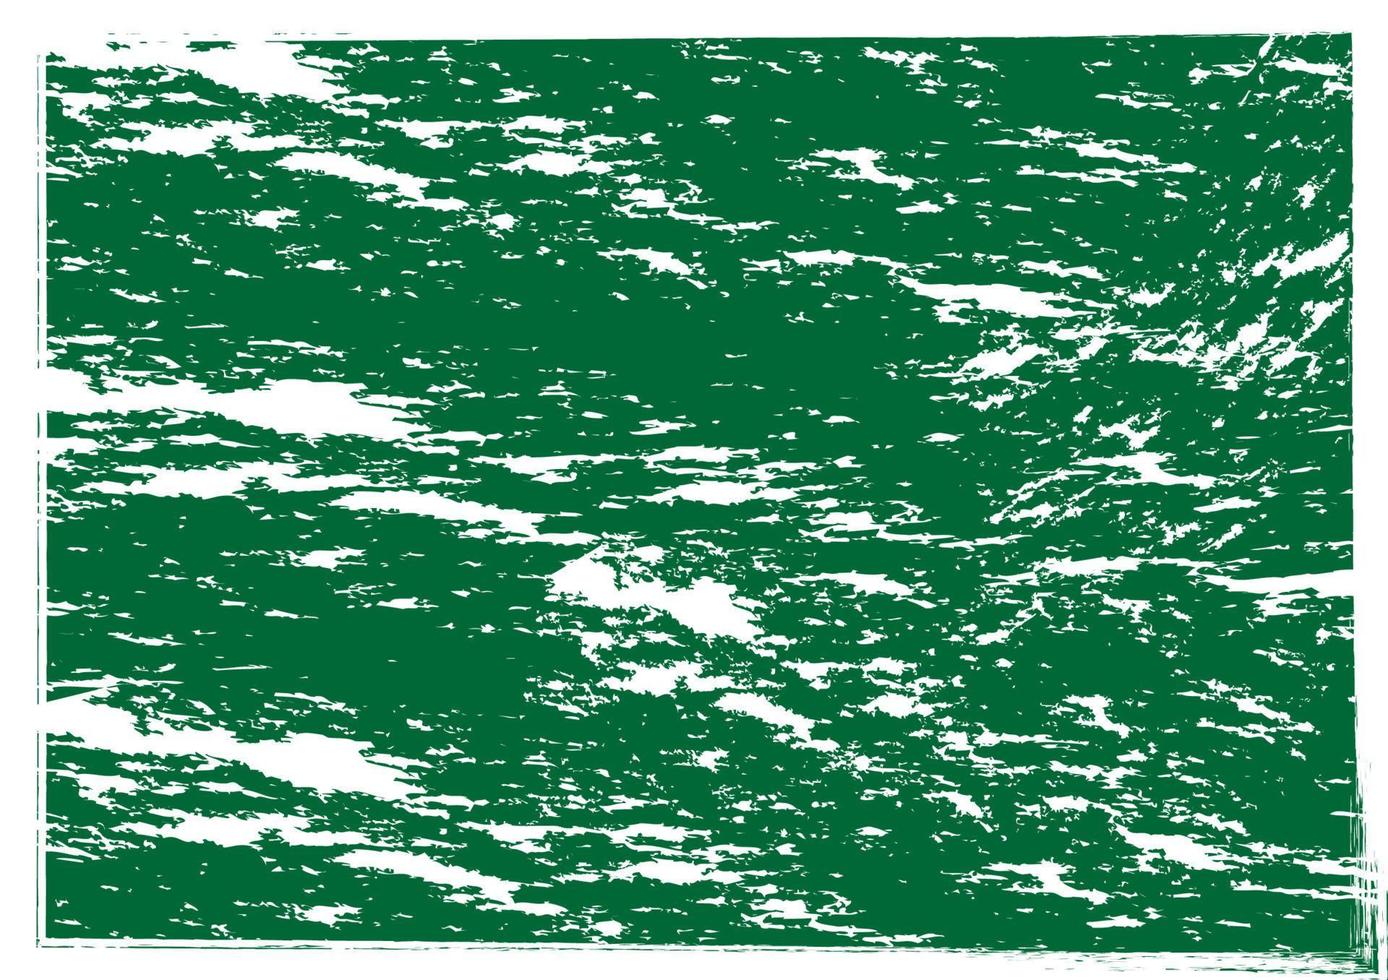 hallo terug naar school krijt geweven op groen bord artistieke abstracte achtergrond achtergrond vectorillustratie vector